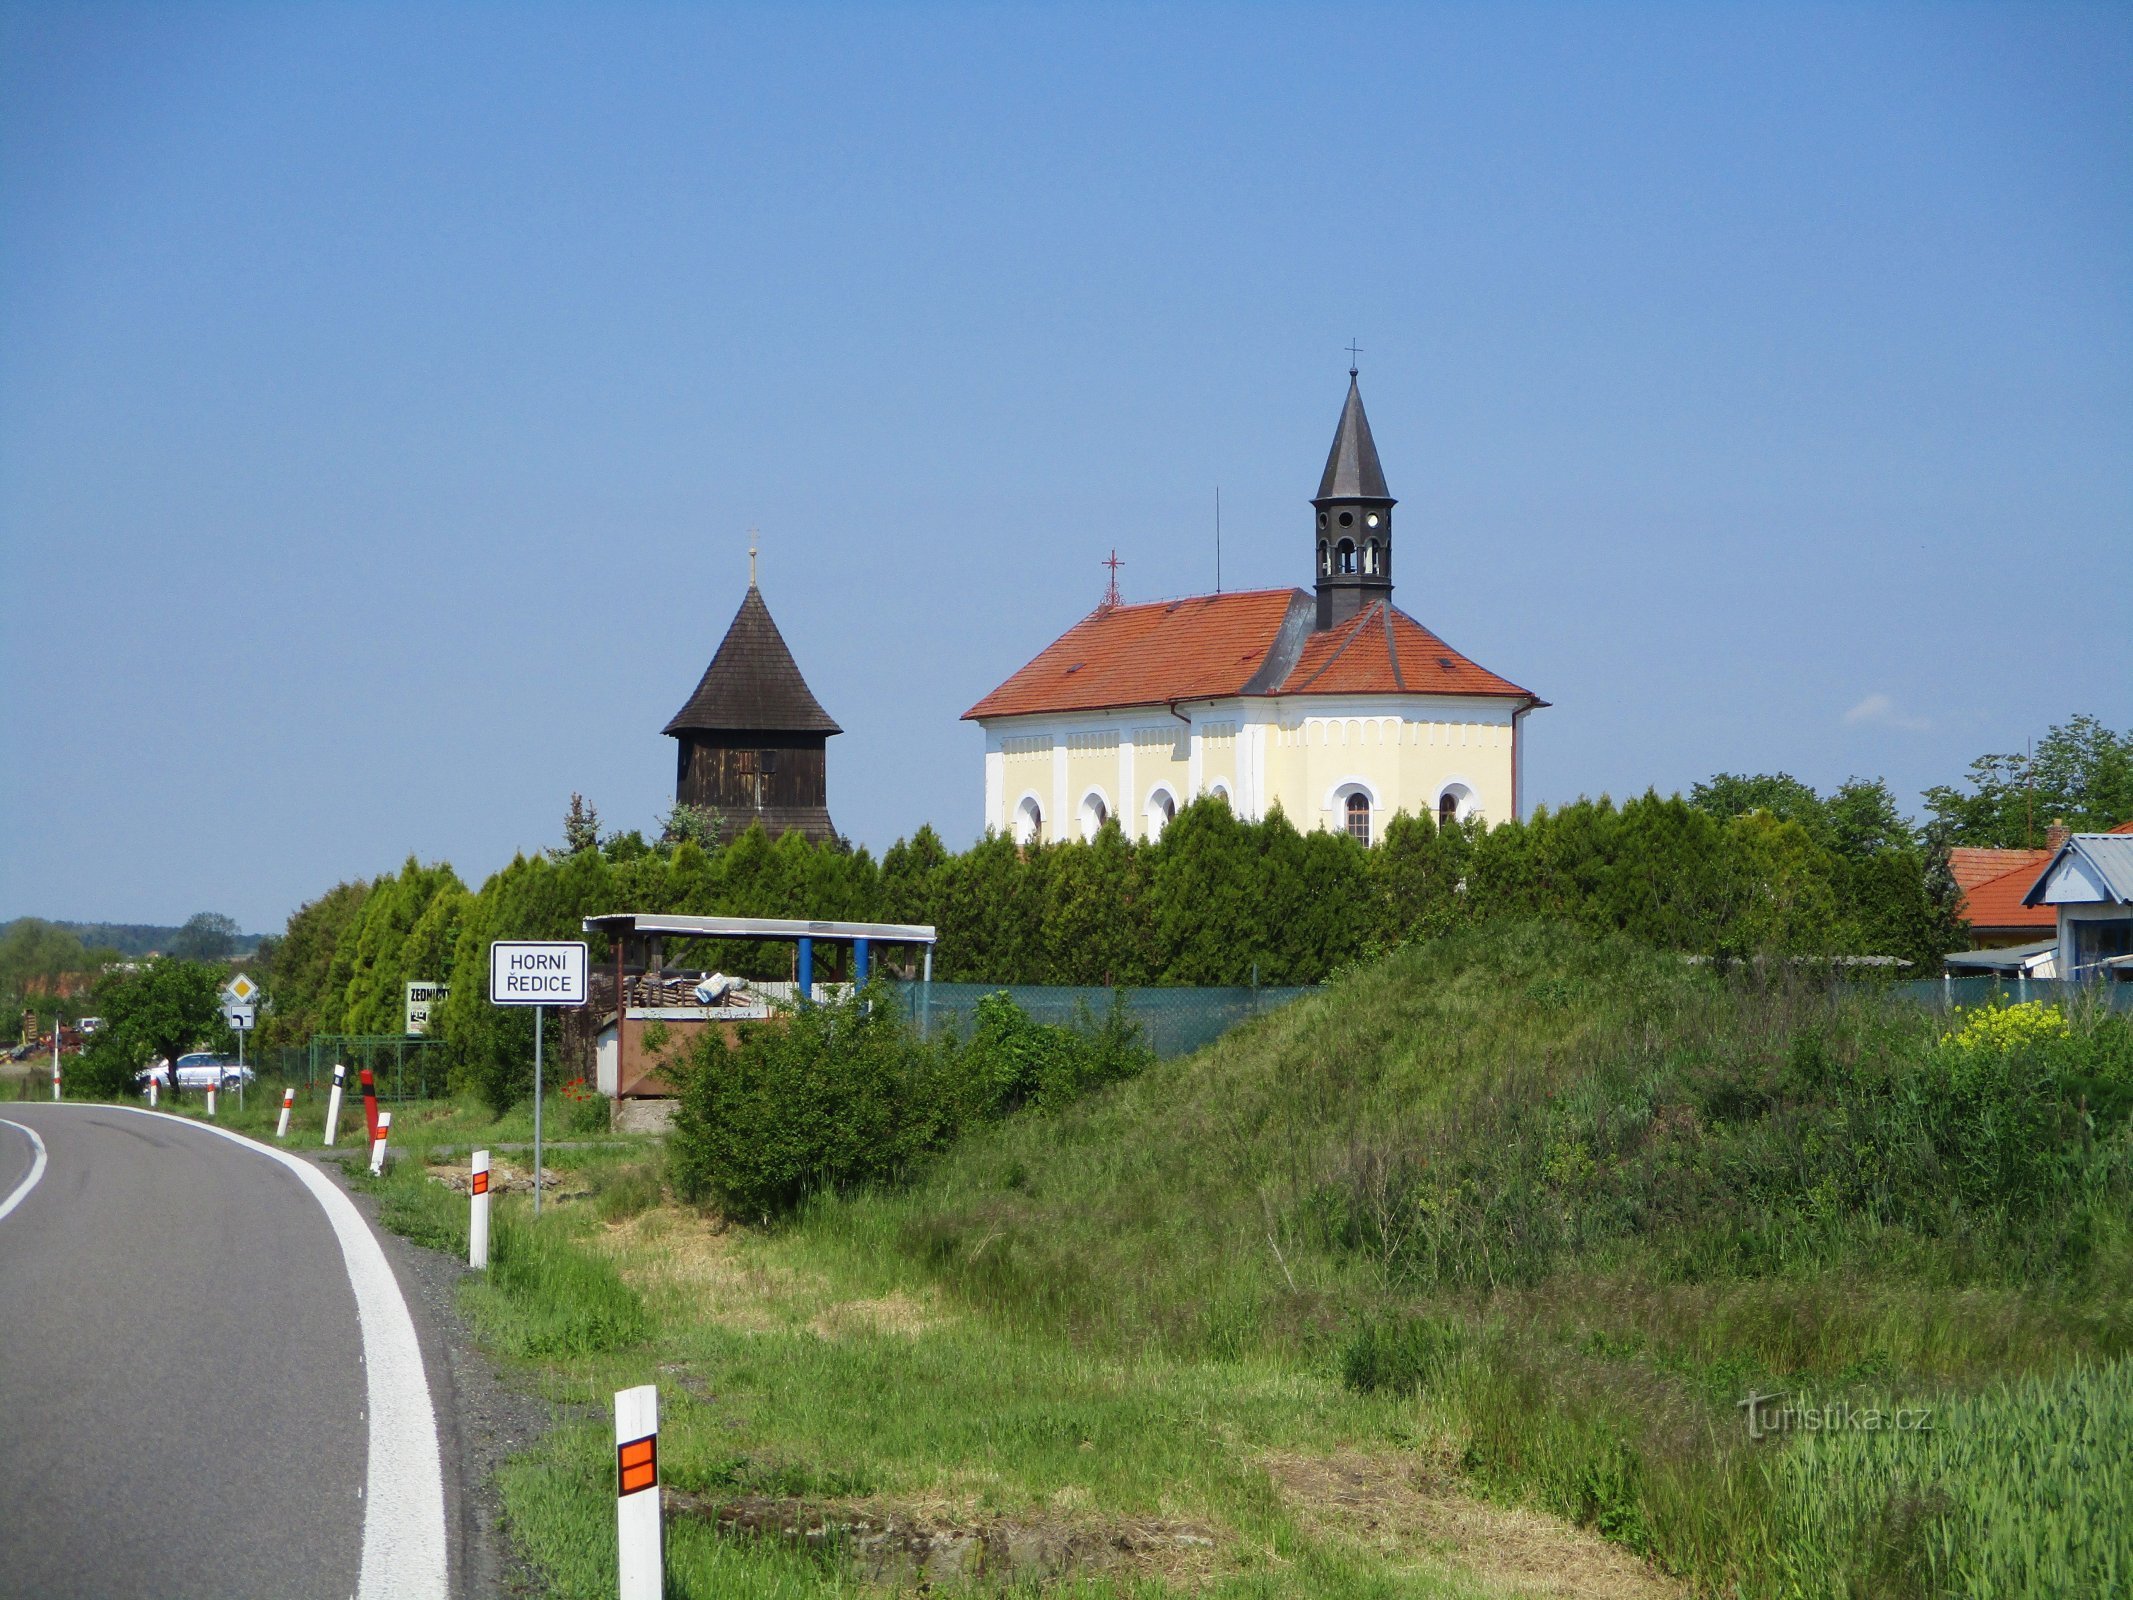 Kościół św. Wacław z dzwonnicą (Horní Ředice, 16.5.2020)